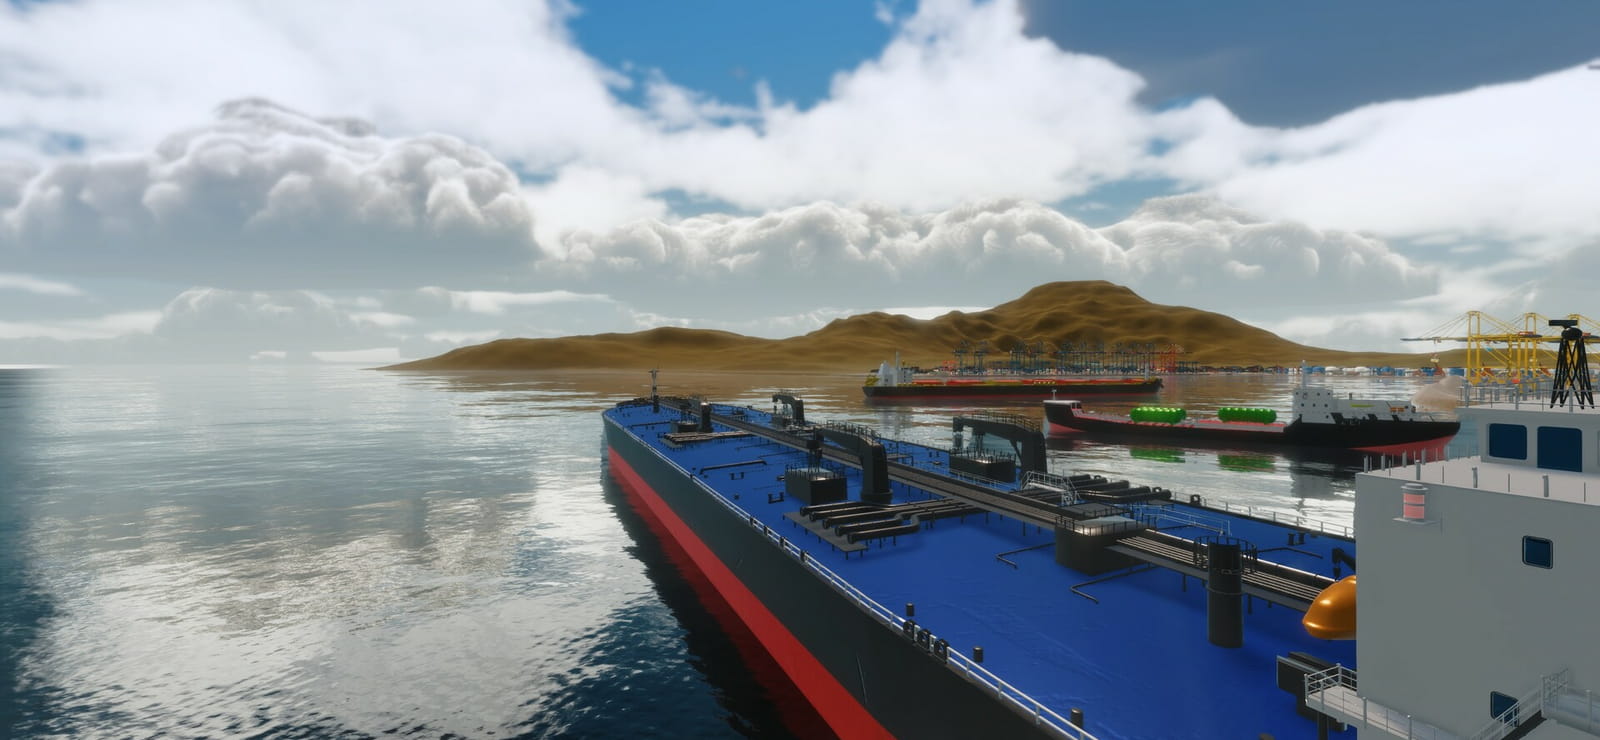 SeaOrama: World Of Shipping